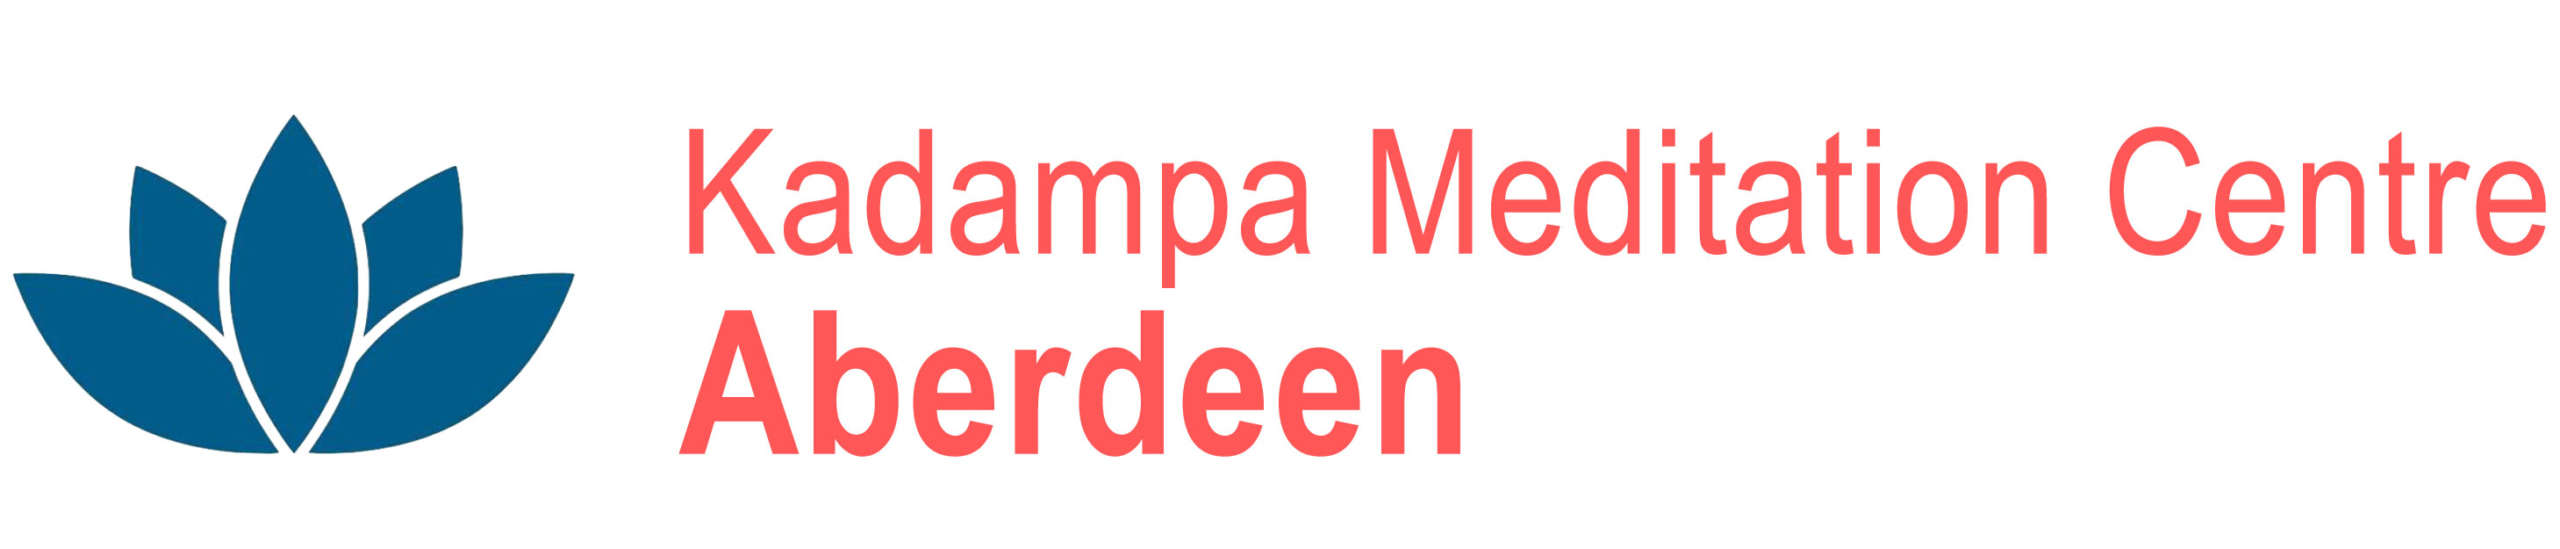 Kadampa Meditation Centre Aberdeen